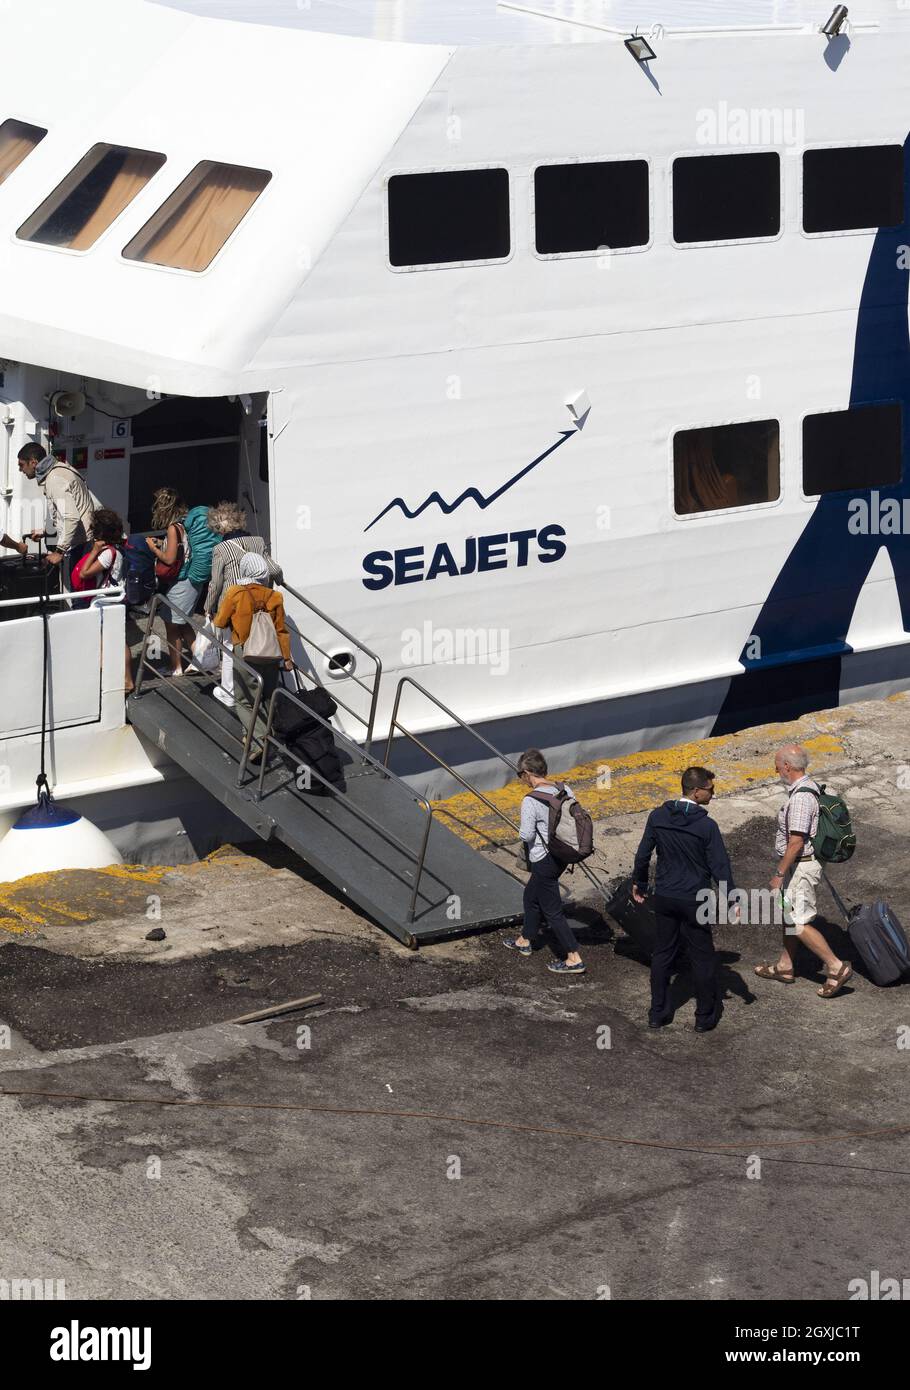 Isola di Naxos - Grecia - Settembre 27 2019 : traghetto ad alta velocità con imbarco passeggeri. Scatto verticale da un'angolazione elevata Foto Stock